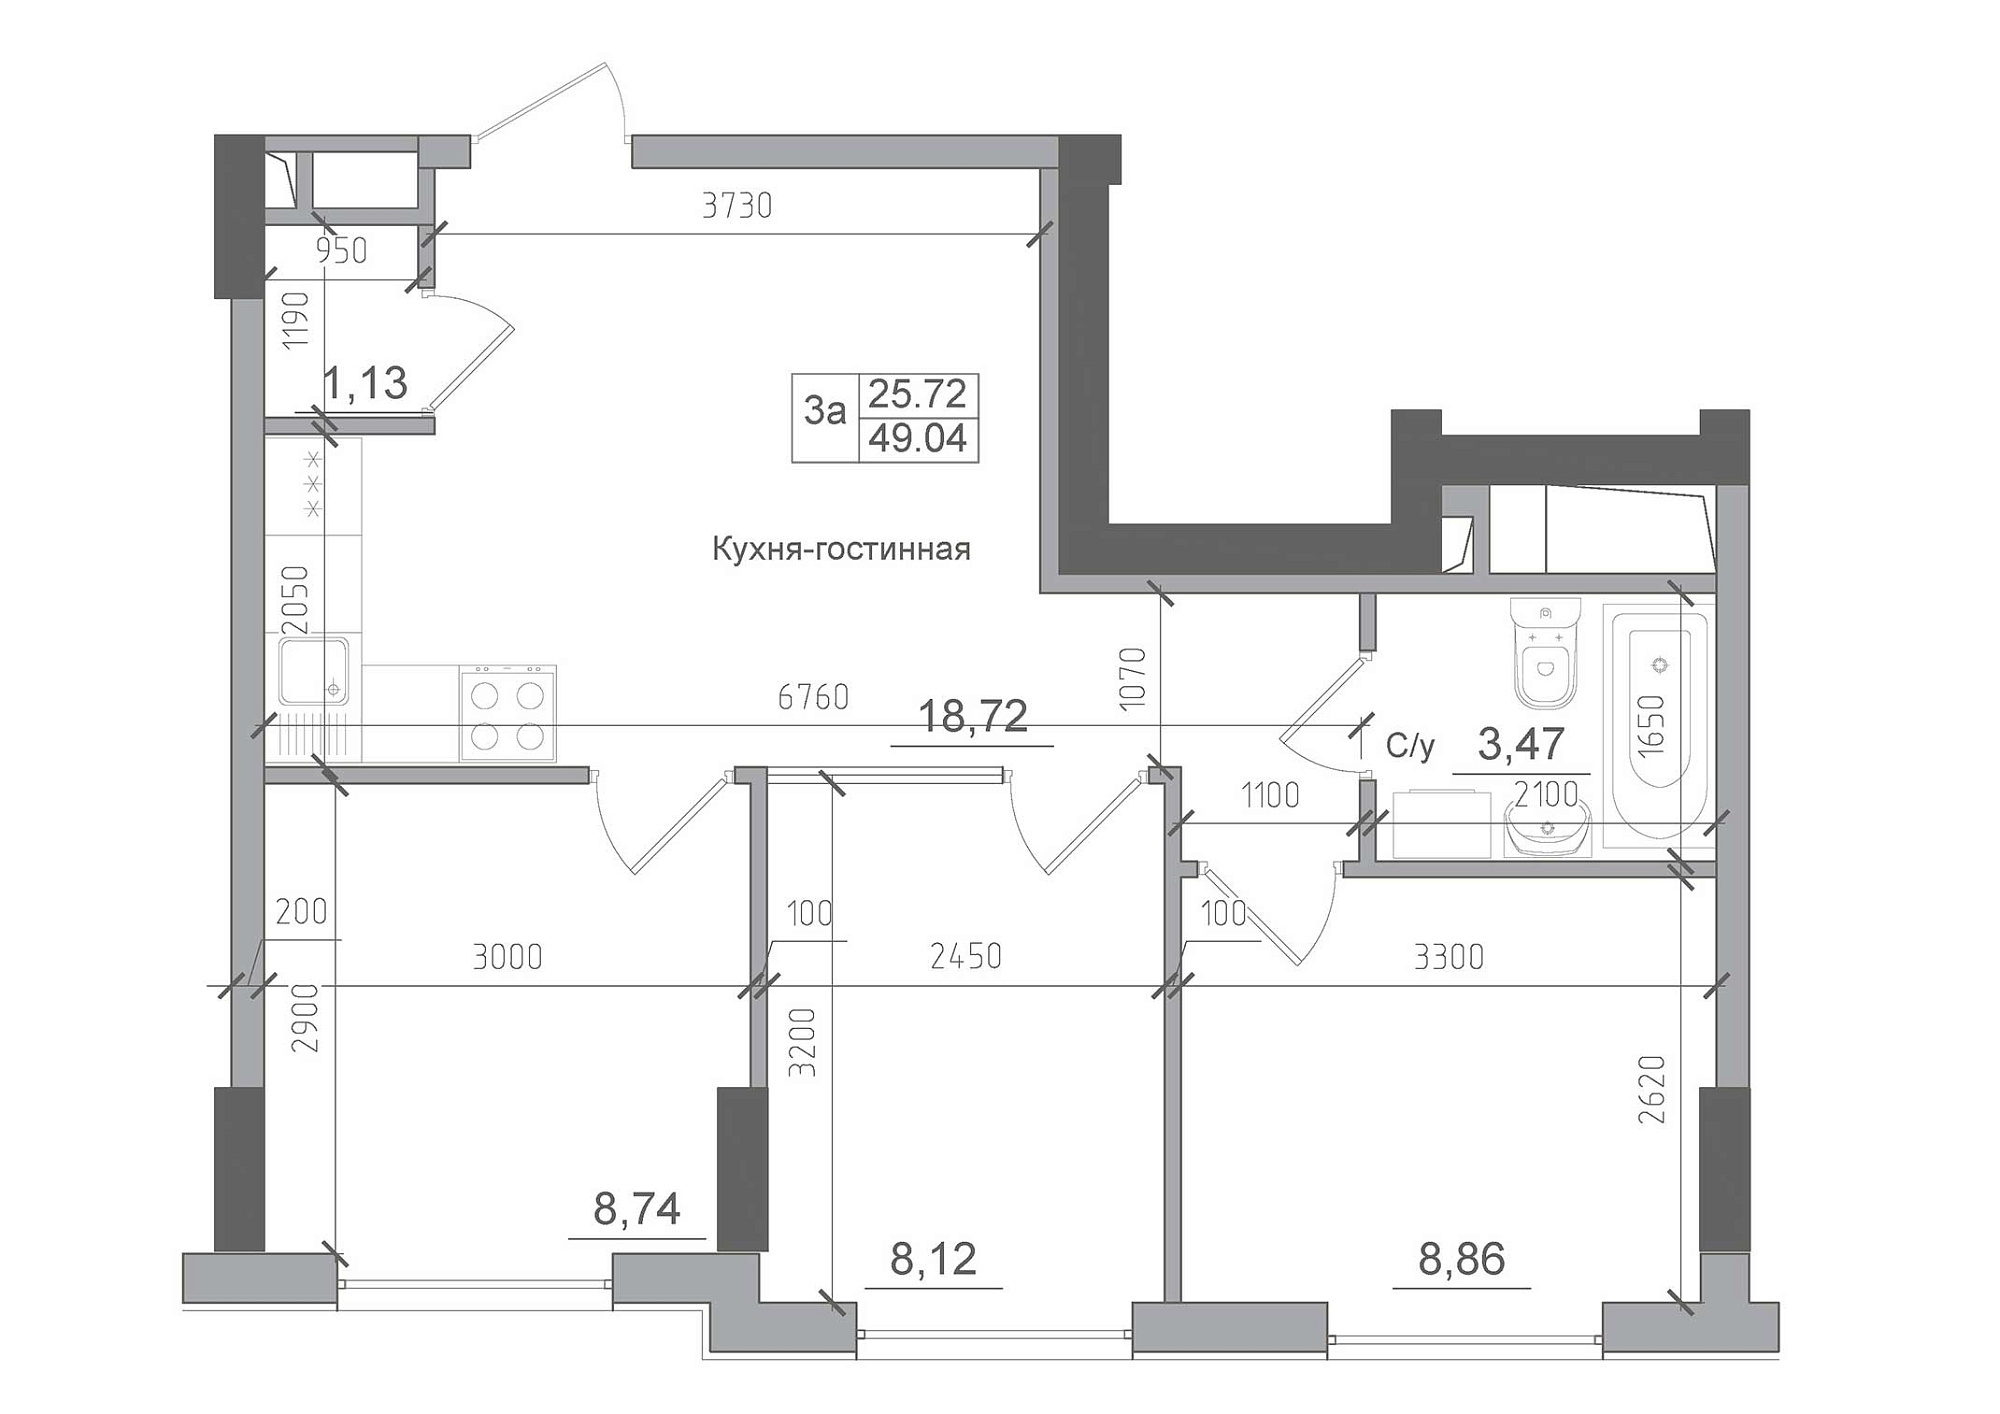 Планування 3-к квартира площею 49.04м2, AB-22-03/00007.